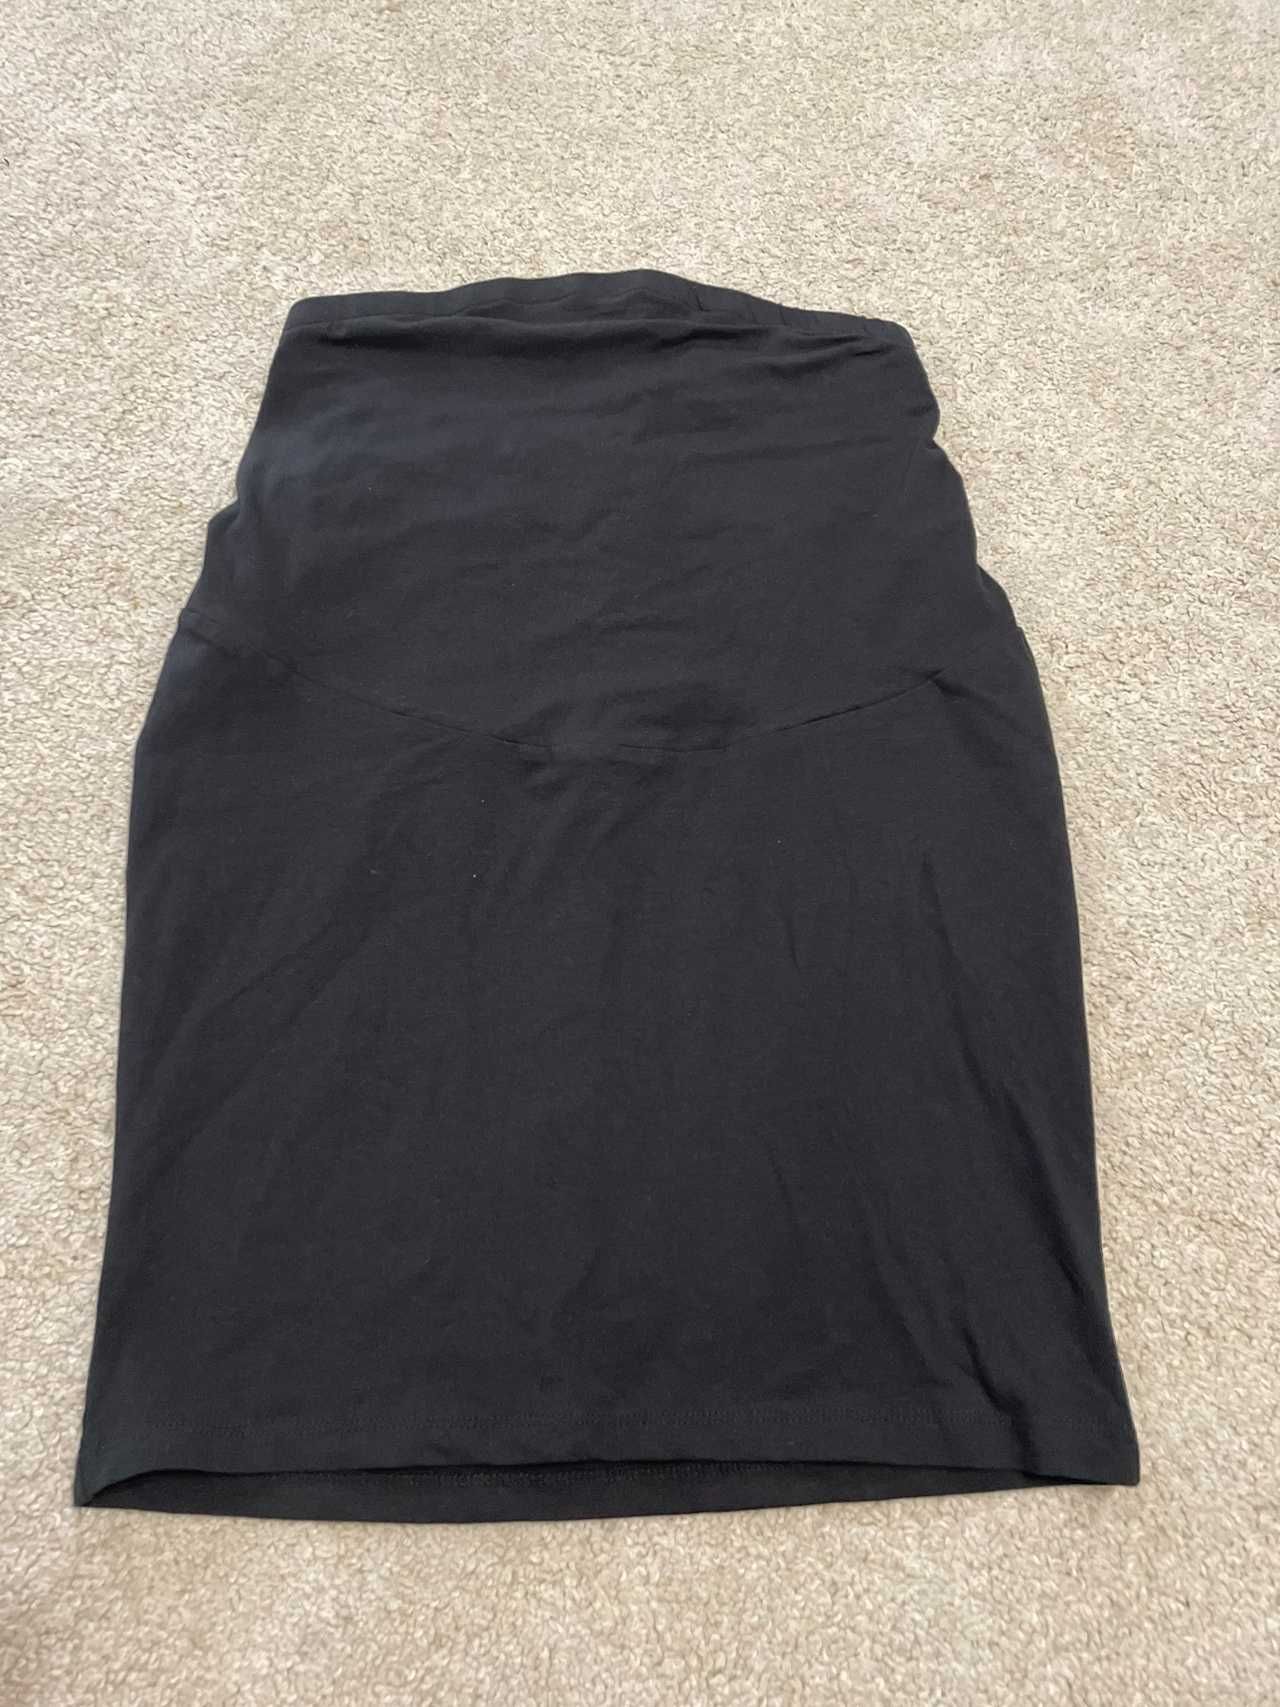 Spódnica ciążowa M czarna, bawełna+elastan